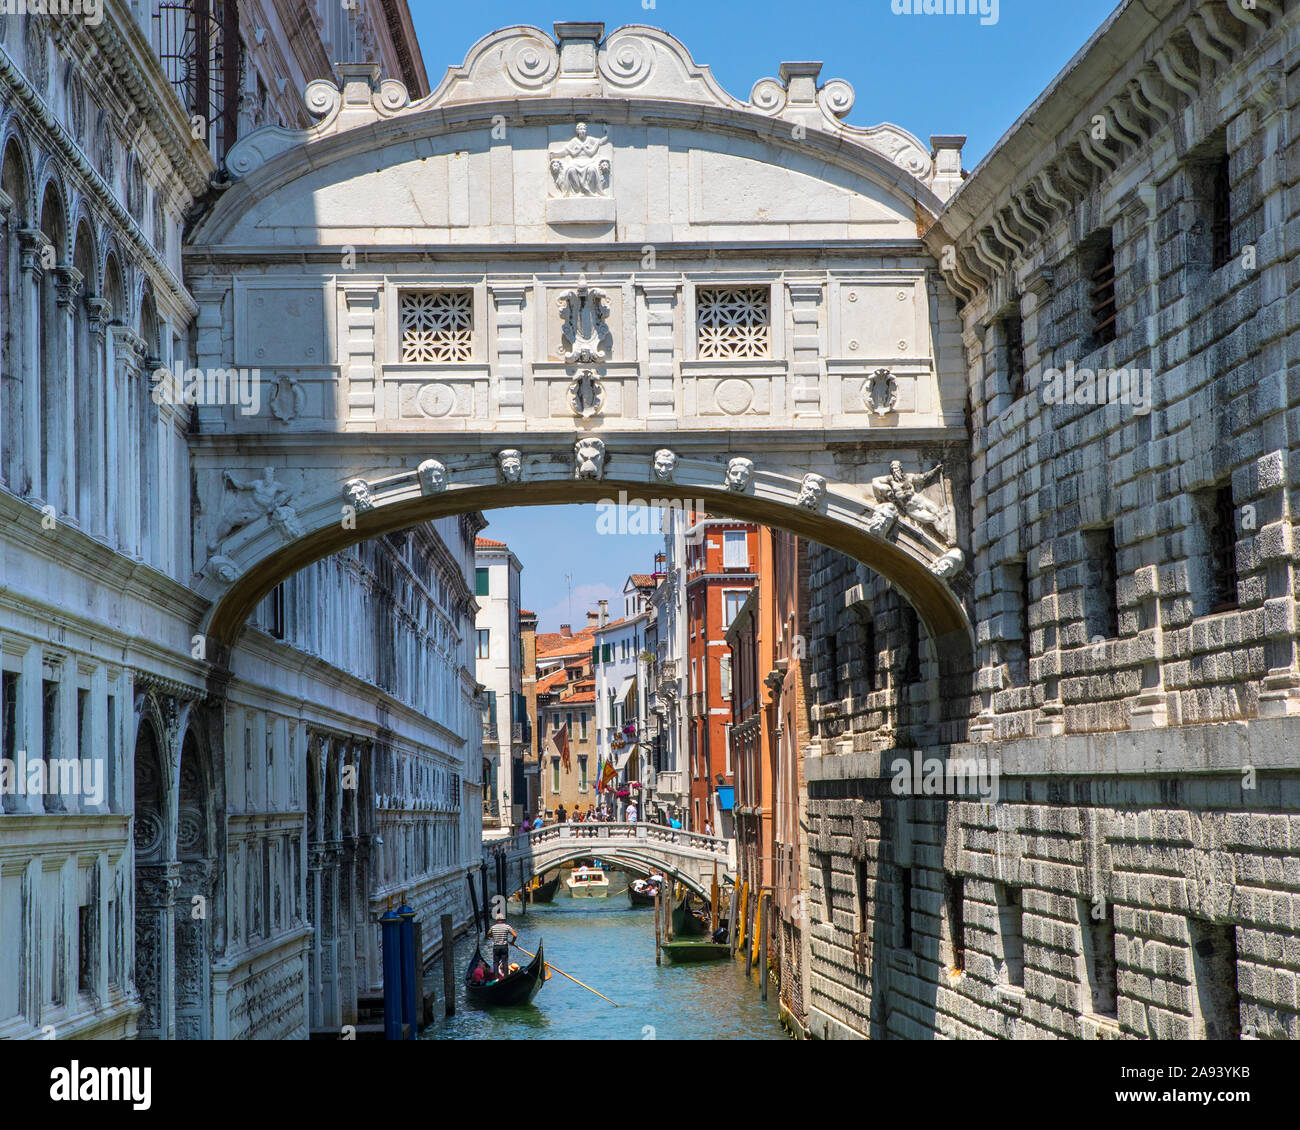 Venise, Italie - 20 juillet 2019 : une vue sur le célèbre Pont des Soupirs dans la ville de Venise, Italie. Banque D'Images